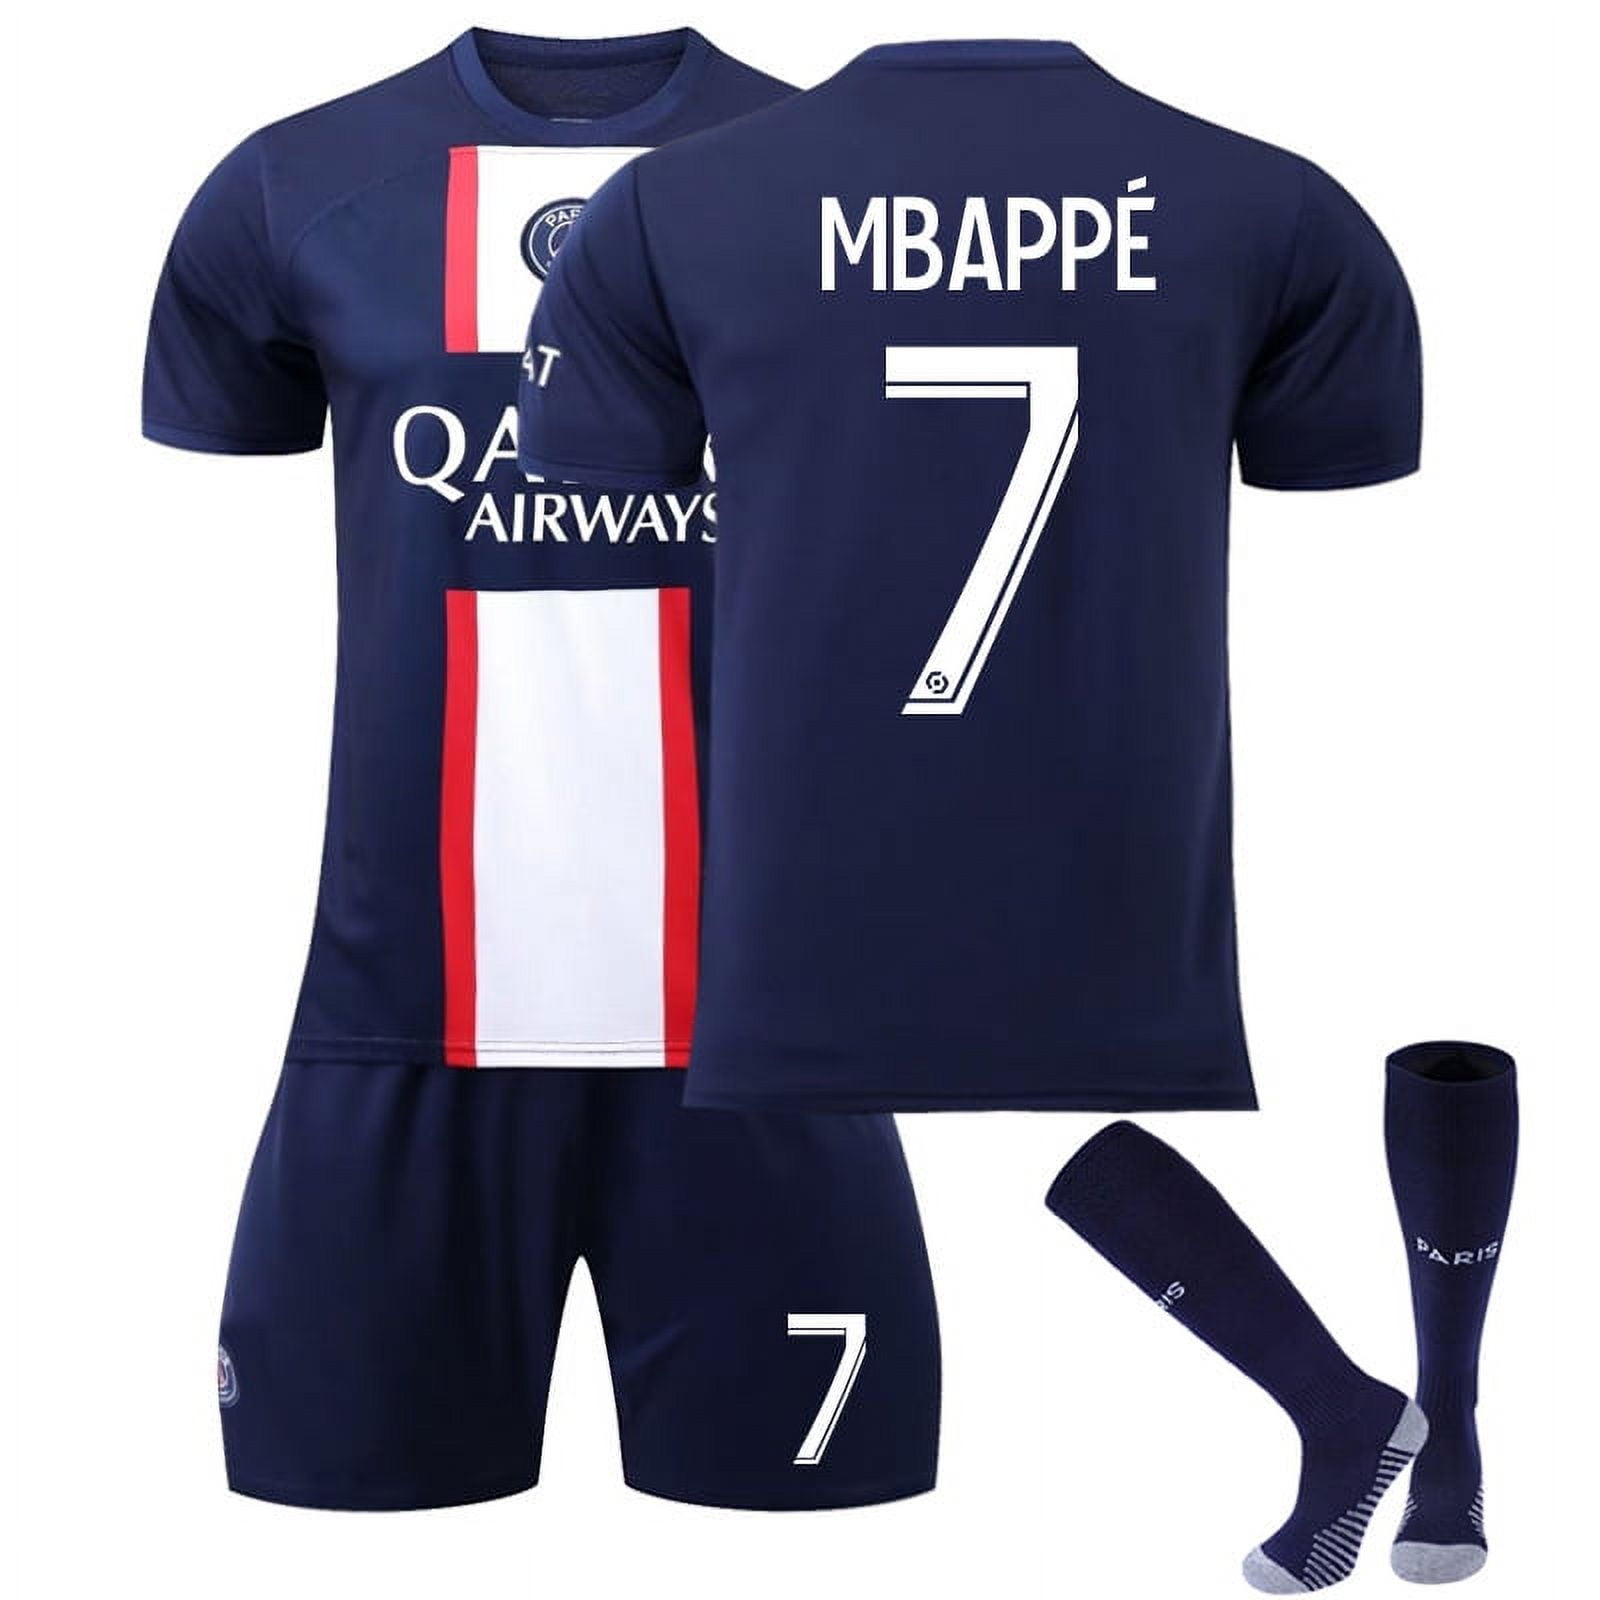 Paris Saint-Germain Fan Jerseys for sale